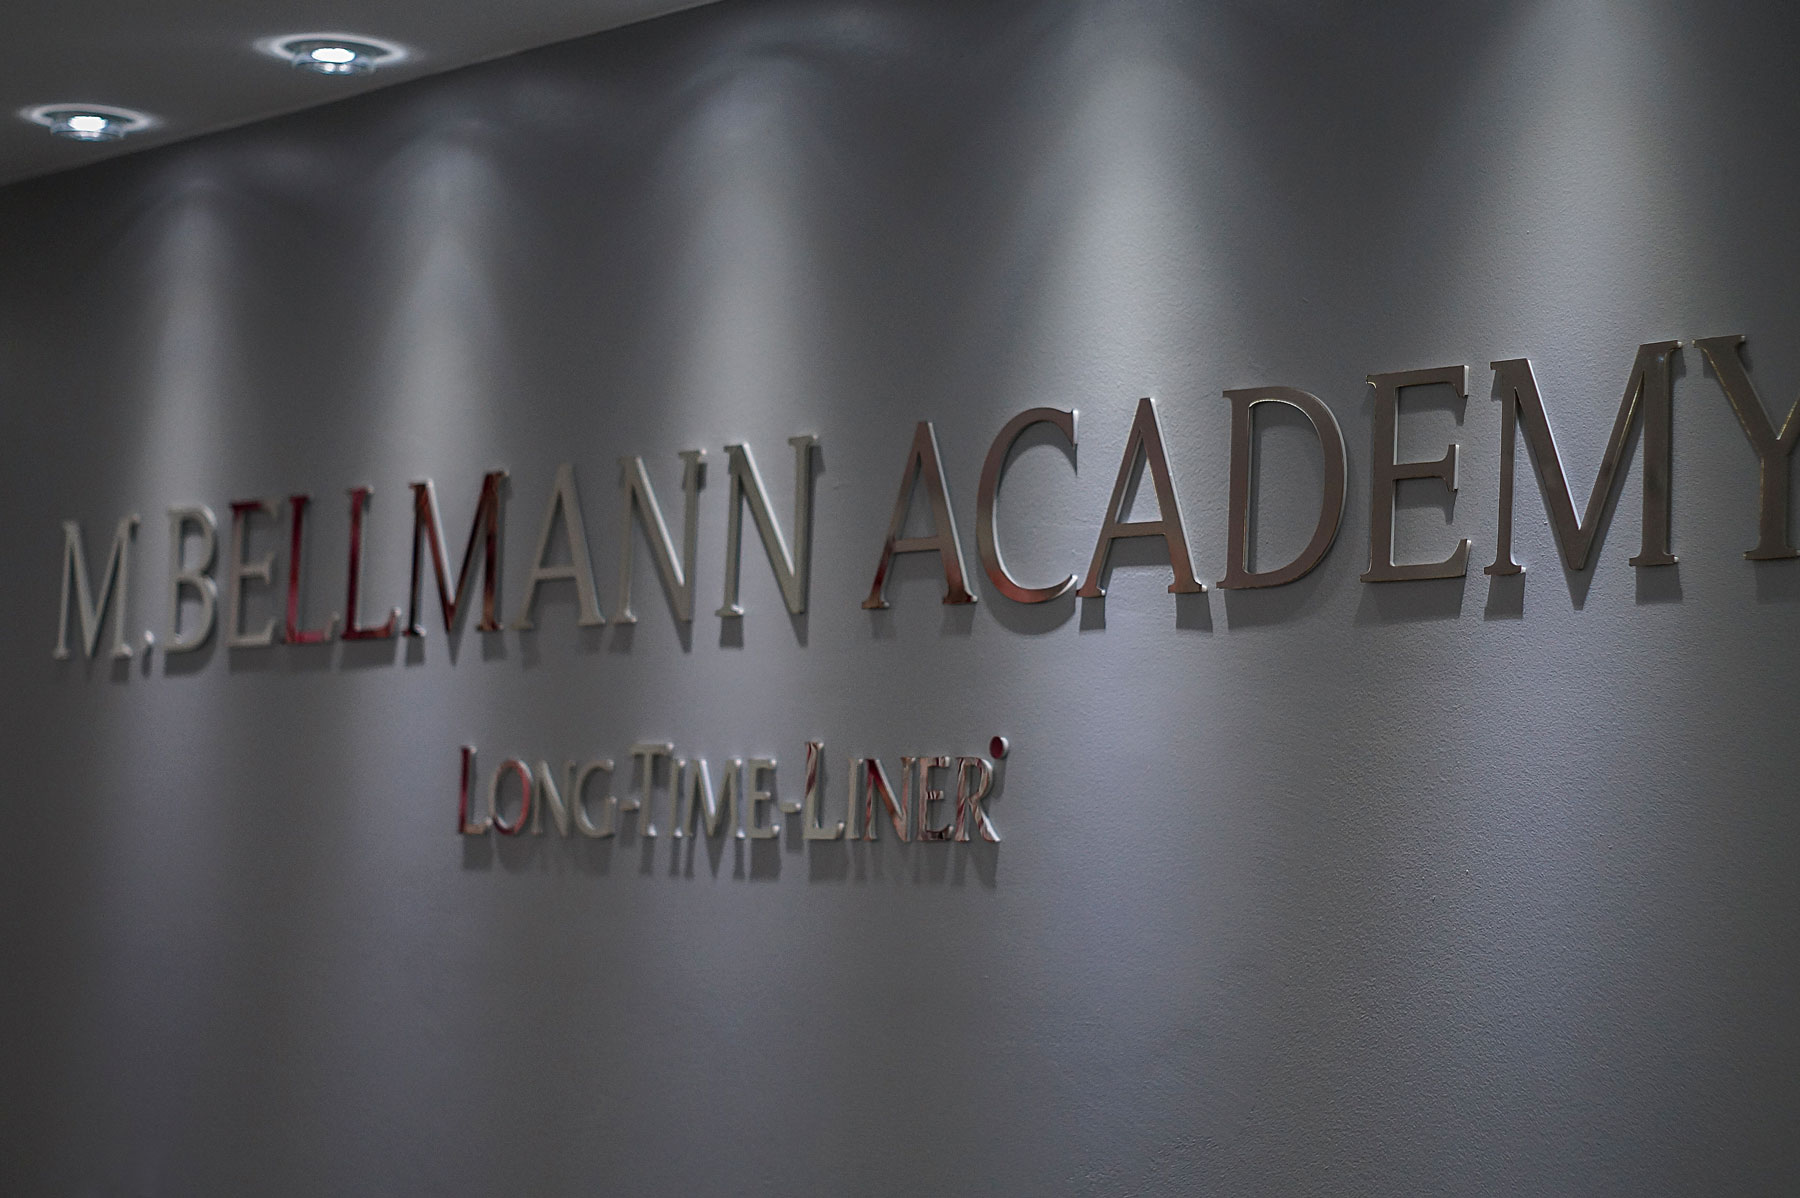 M. Bellmann Academy – Long-Time-Liner®